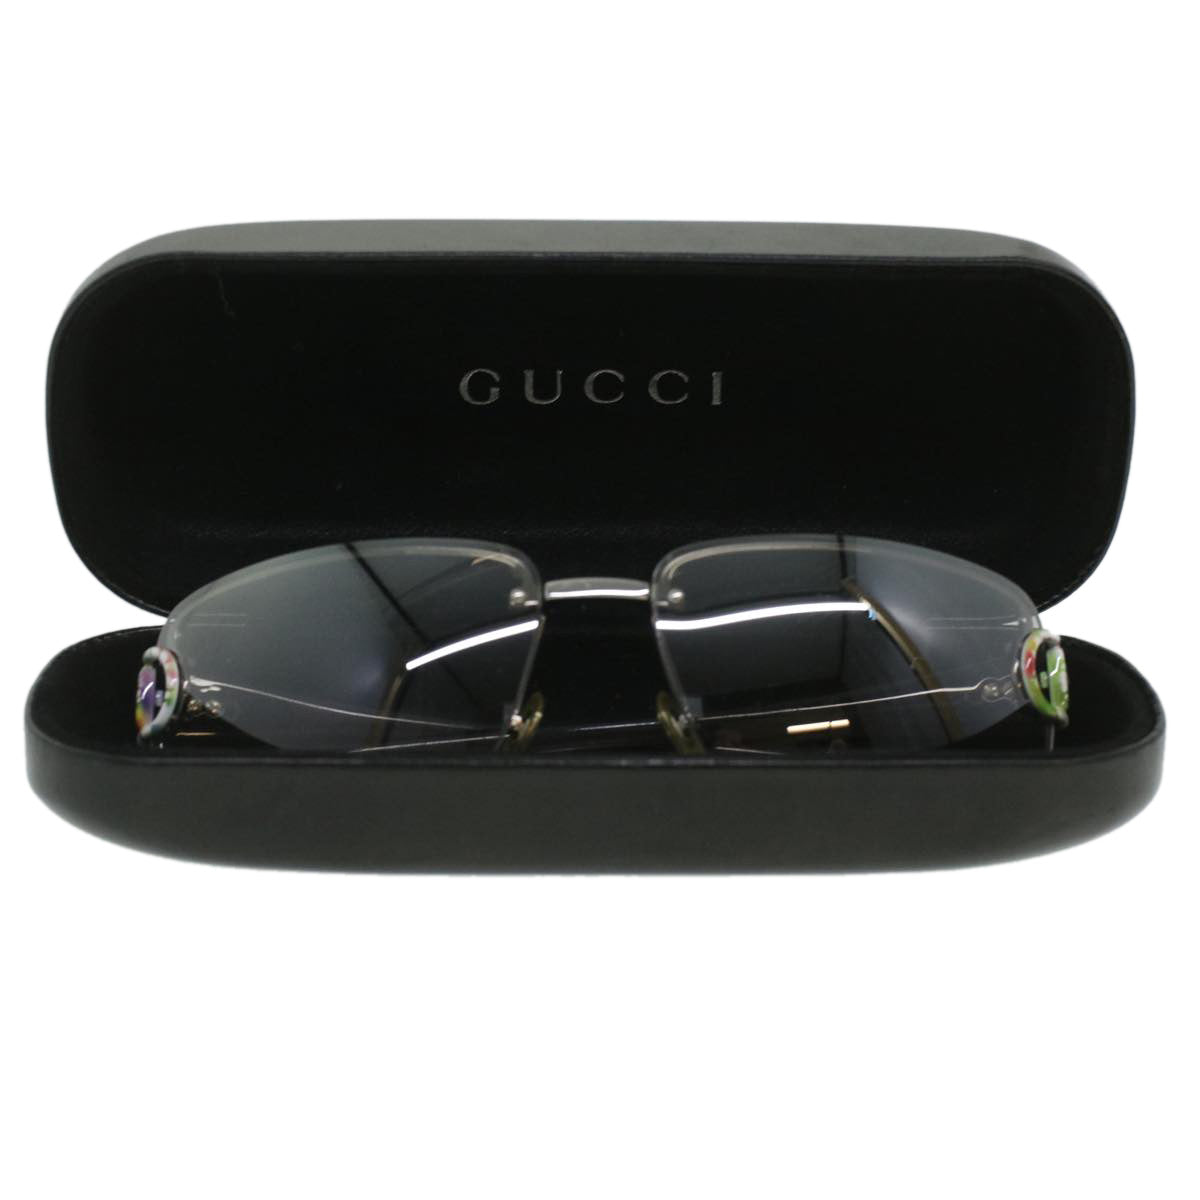 GUCCI Floral Sunglasses Platstick Black Auth 36753